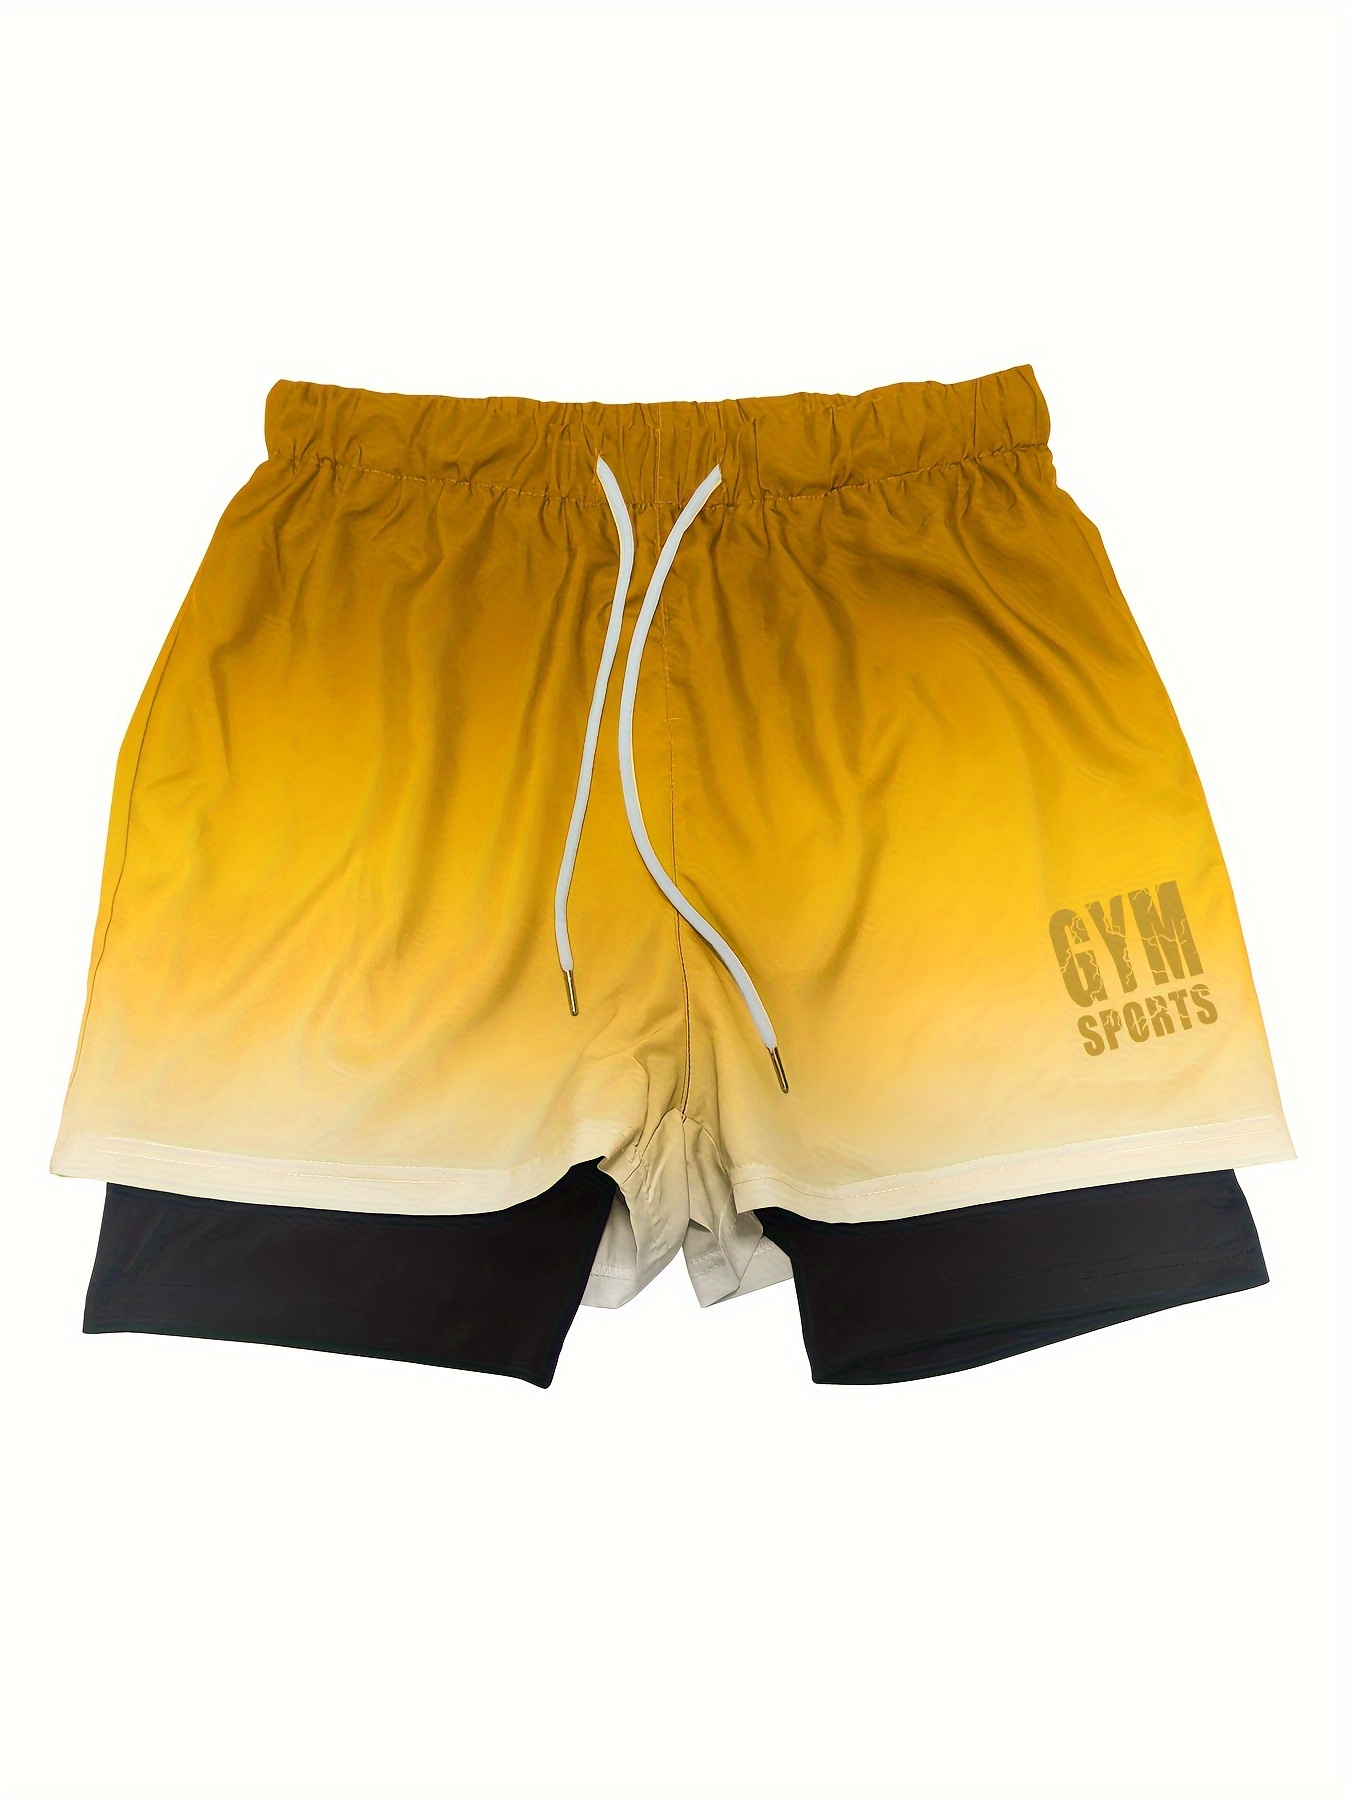 Pantalones Cortos Deportivos Para Hombre Short De Deporte Entrenamiento  Gimnasio